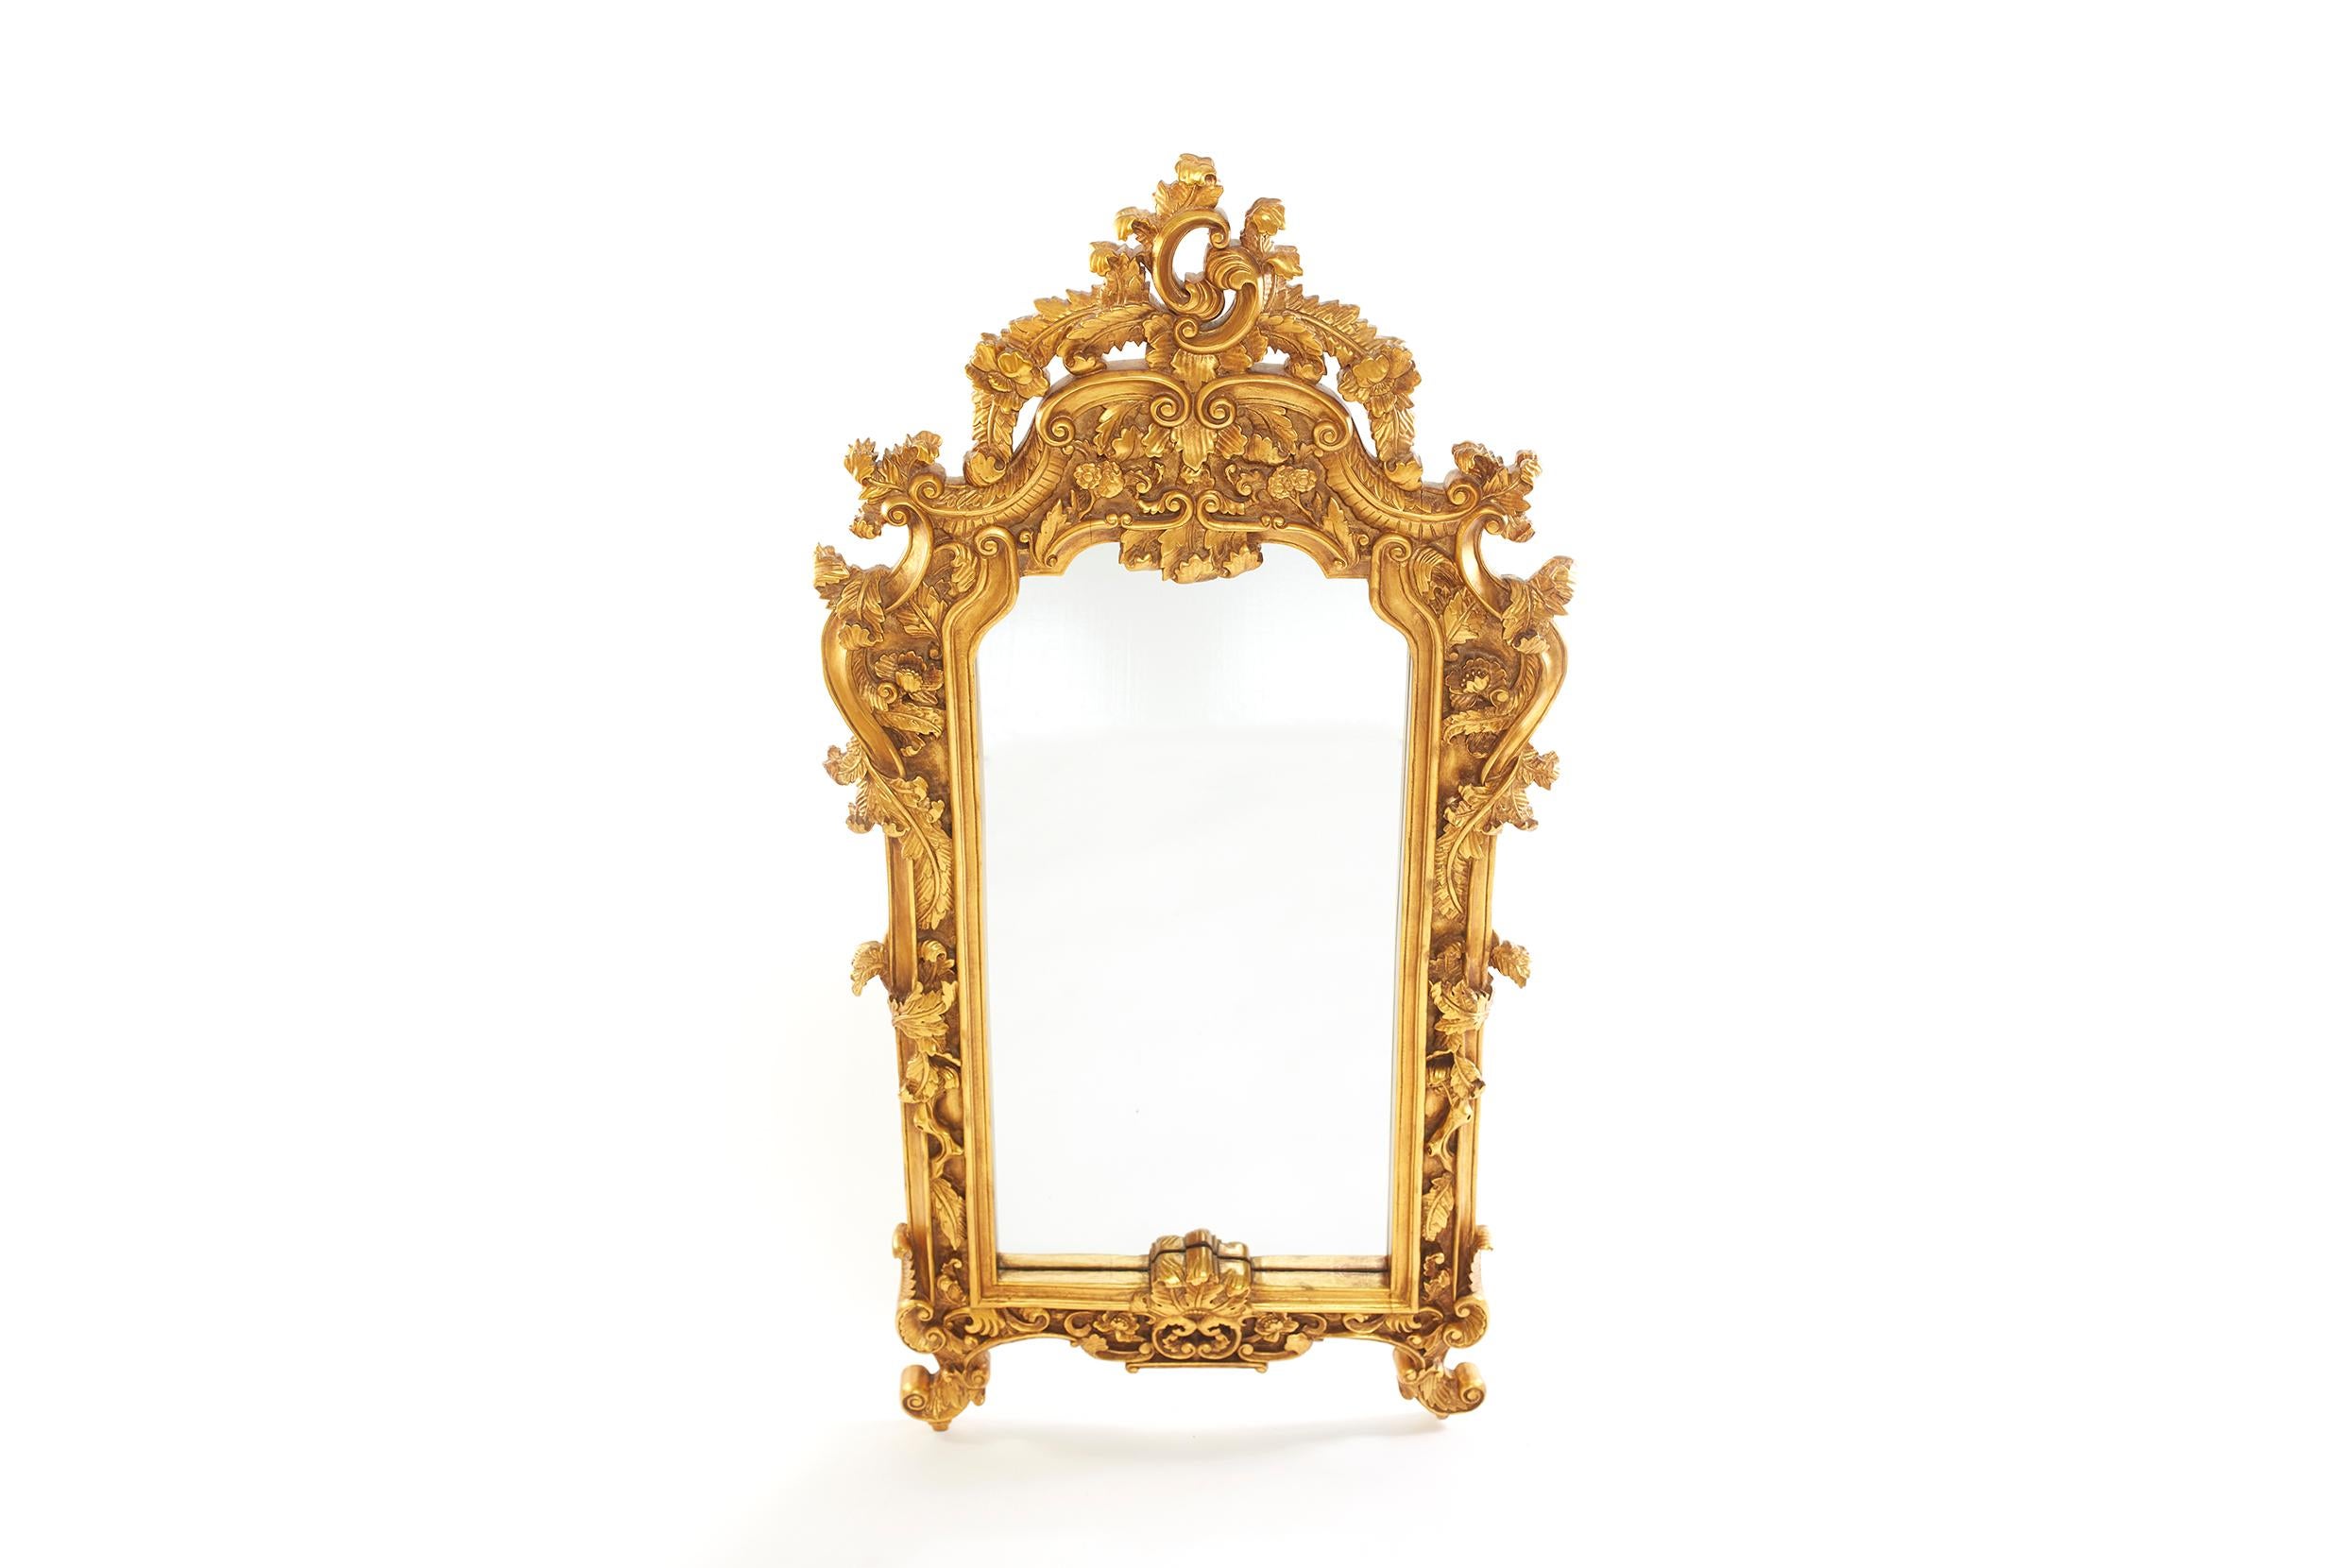 Paire de miroirs muraux suspendus biseautés, encadrés en bois doré orné de motifs sculptés à la main. Le miroir est en bon état. Usure mineure correspondant à l'âge/à l'utilisation. Le cadre en bois doré mesure 60 pouces de haut x 31 pouces de large